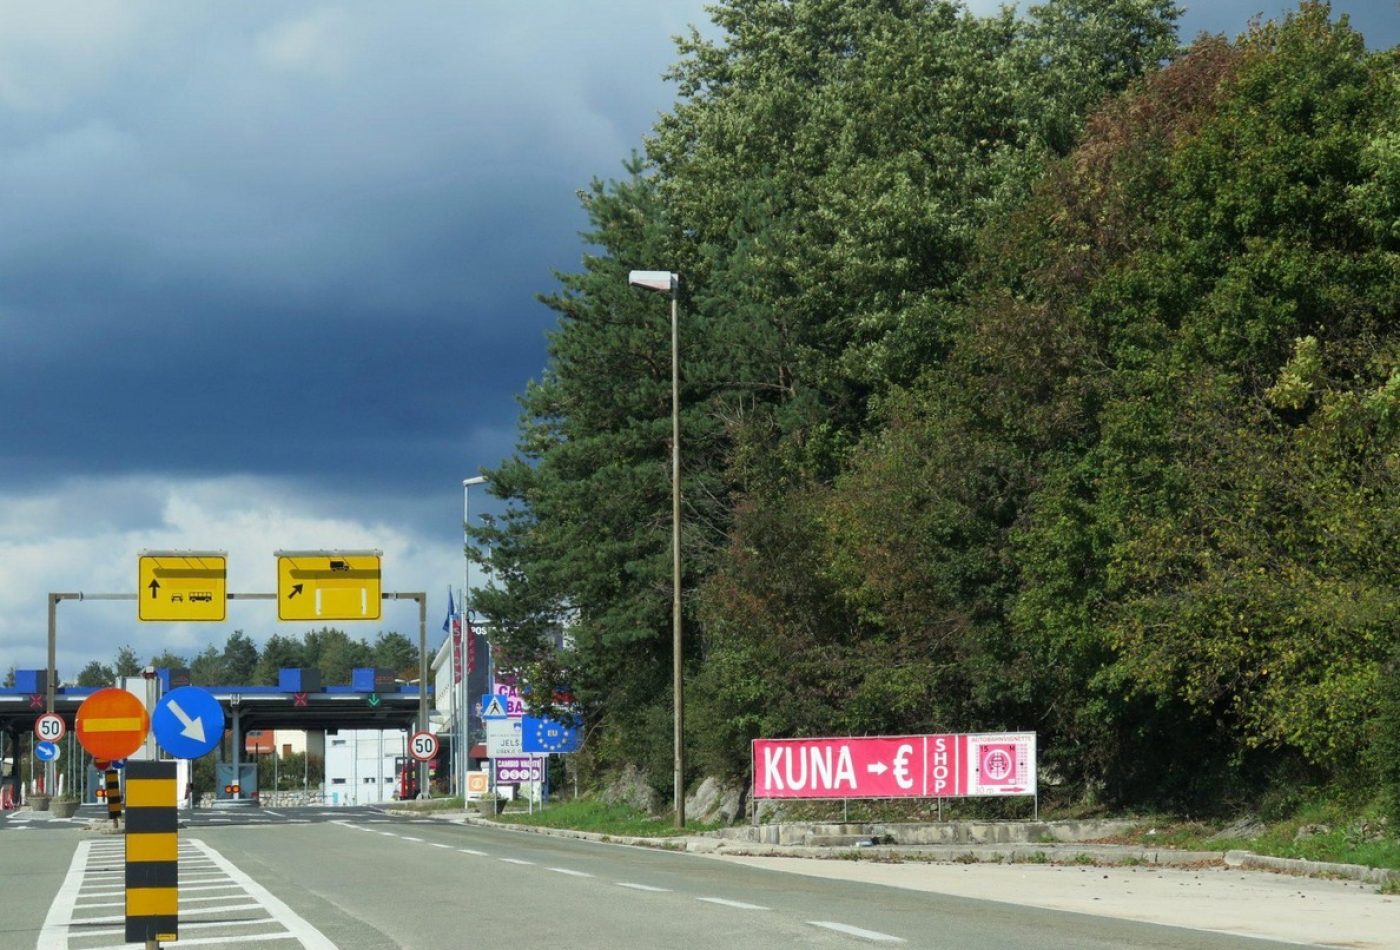 מעבר הגבול לסלובניה, יש לקנות מדבקה לכבישי אגרה
השלט מורה שבסלובניה משלמים ביורו.